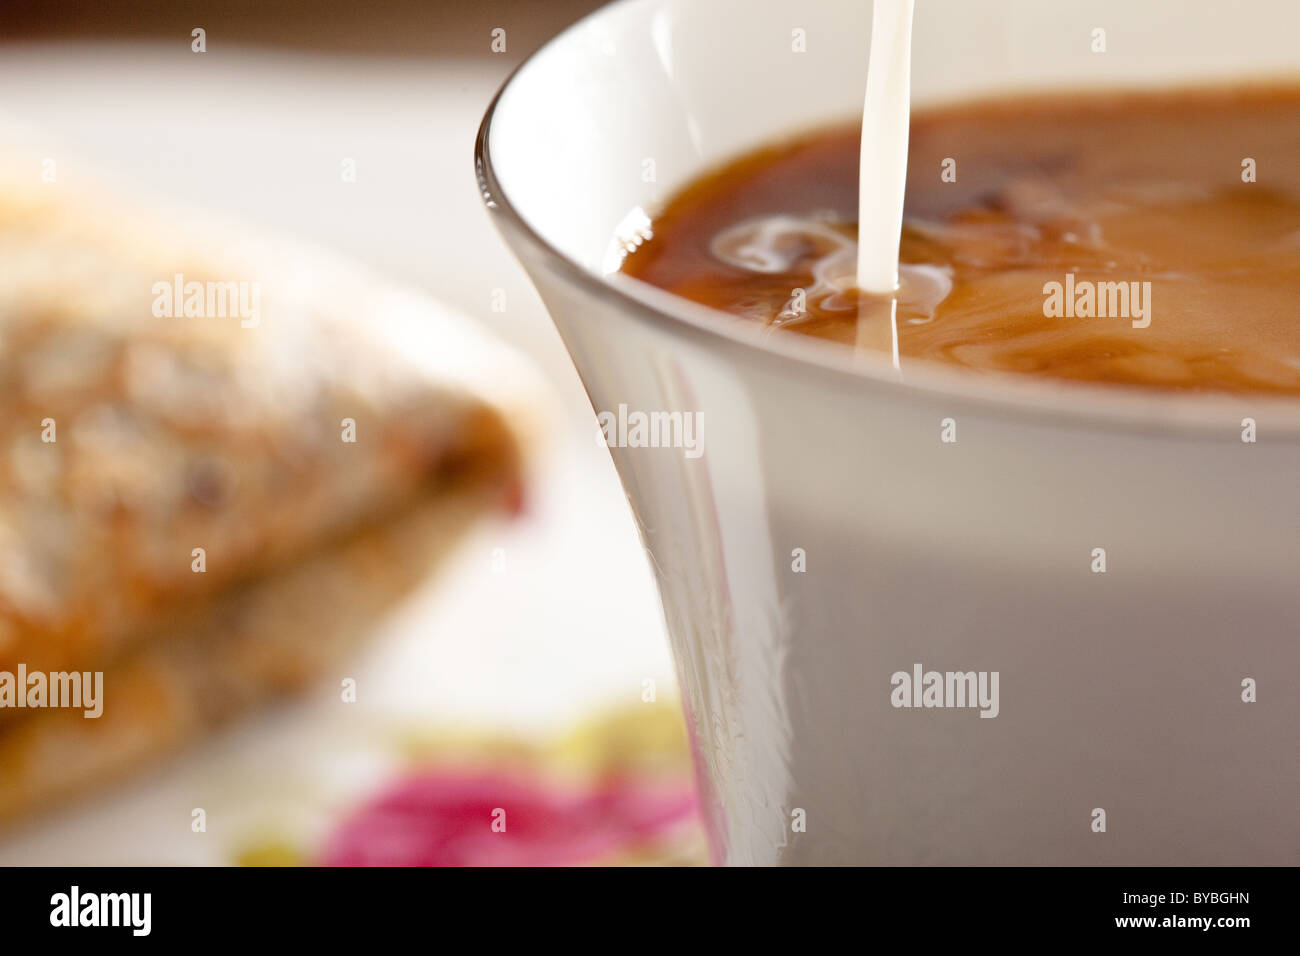 Milch hinzugefügt, um eine Tasse Kaffee, eine isländische Pfannkuchen zweimal mit geschlagener Sahne und Blaubeeren Marmelade neben der Tasse gefaltet. Stockfoto